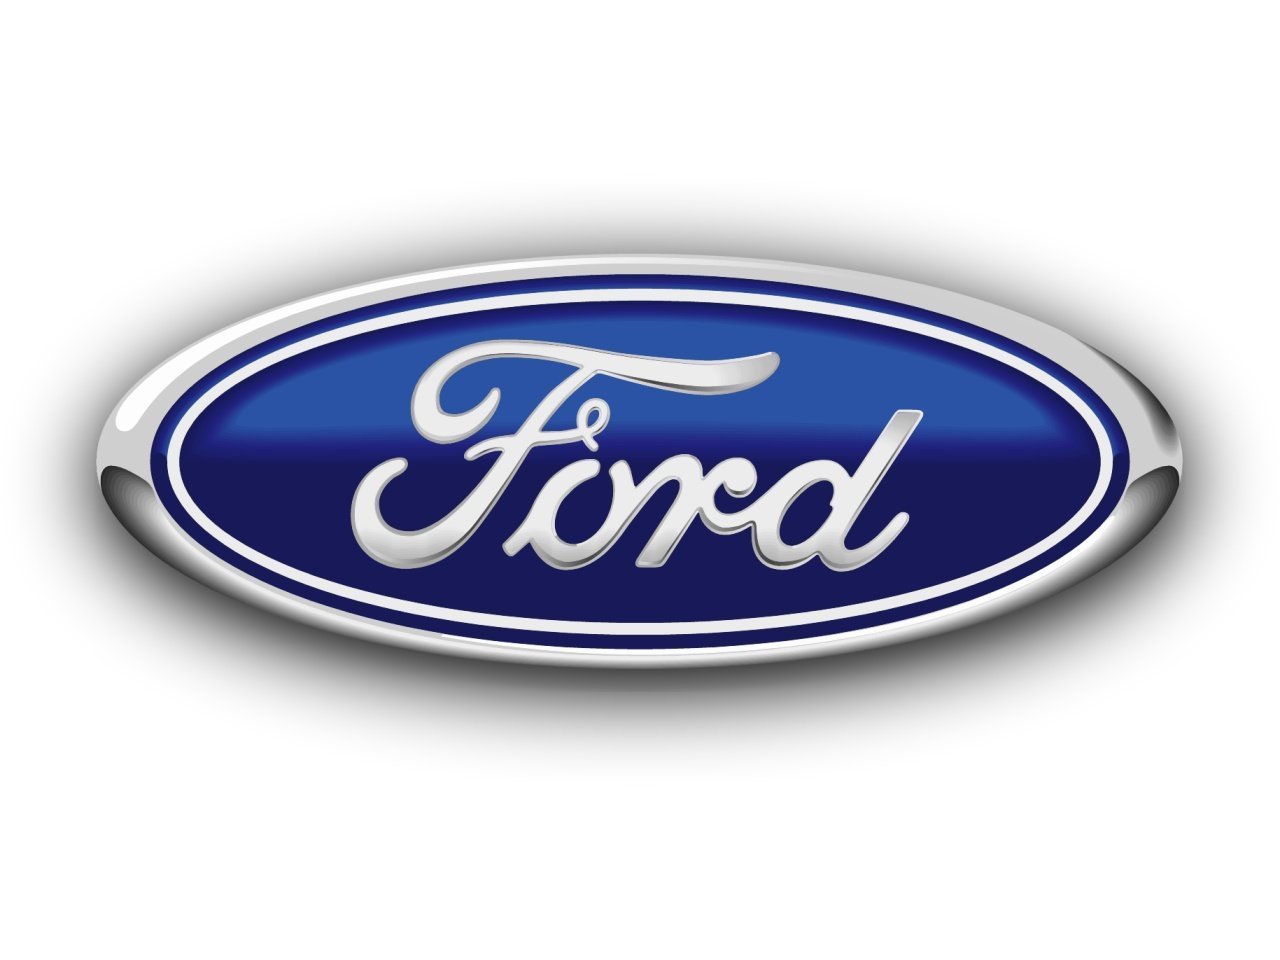 Ford emblem wallpaper